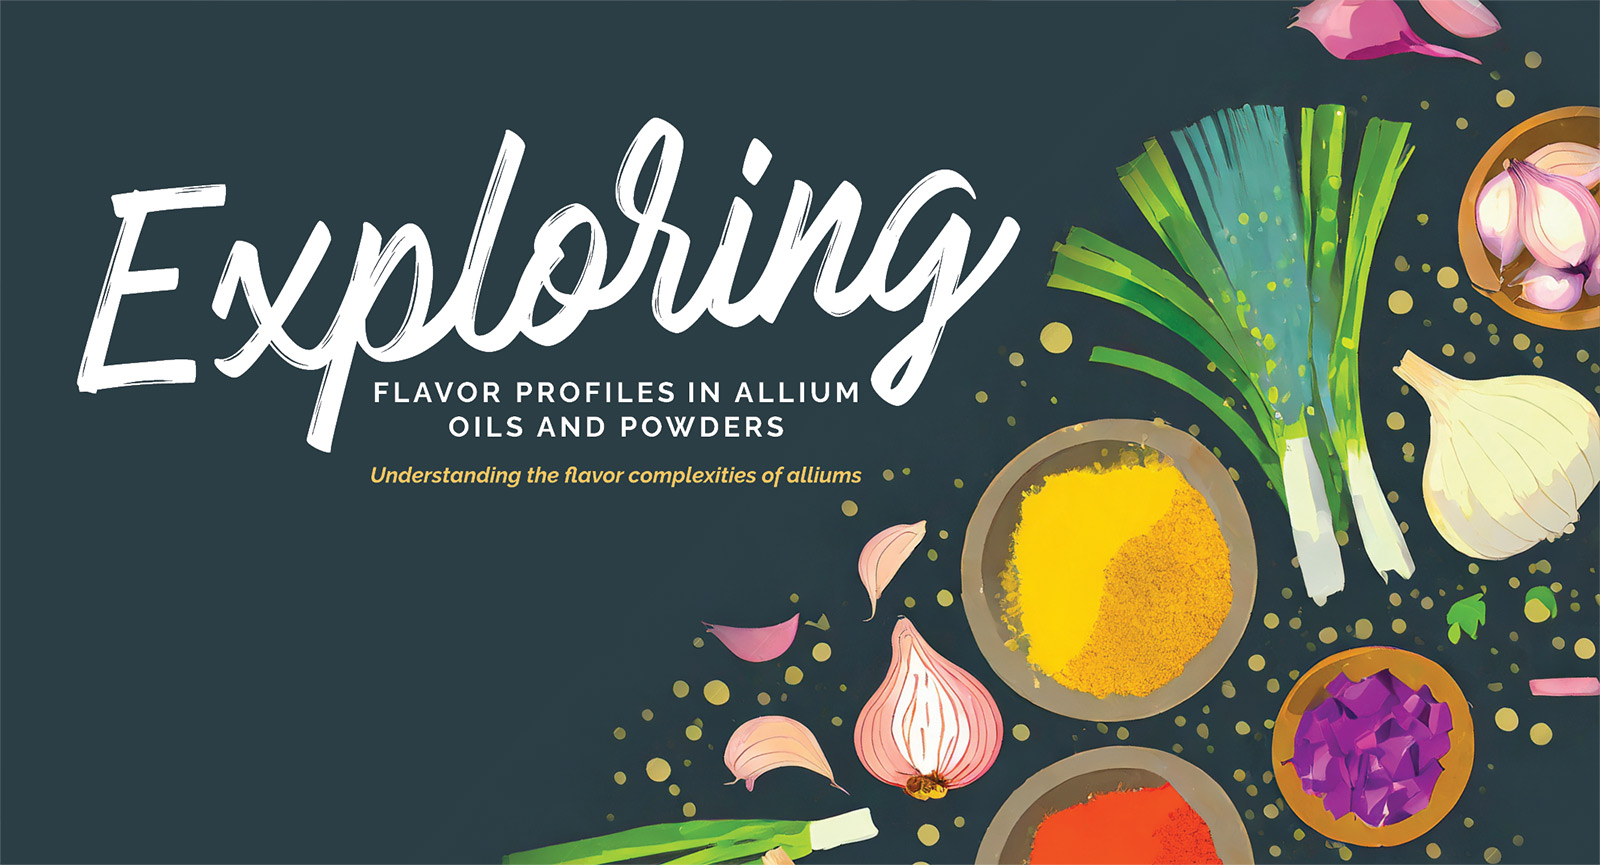 Exploring flavor profiles in allium oils and powders. Understanding the flavor complexities of alliums